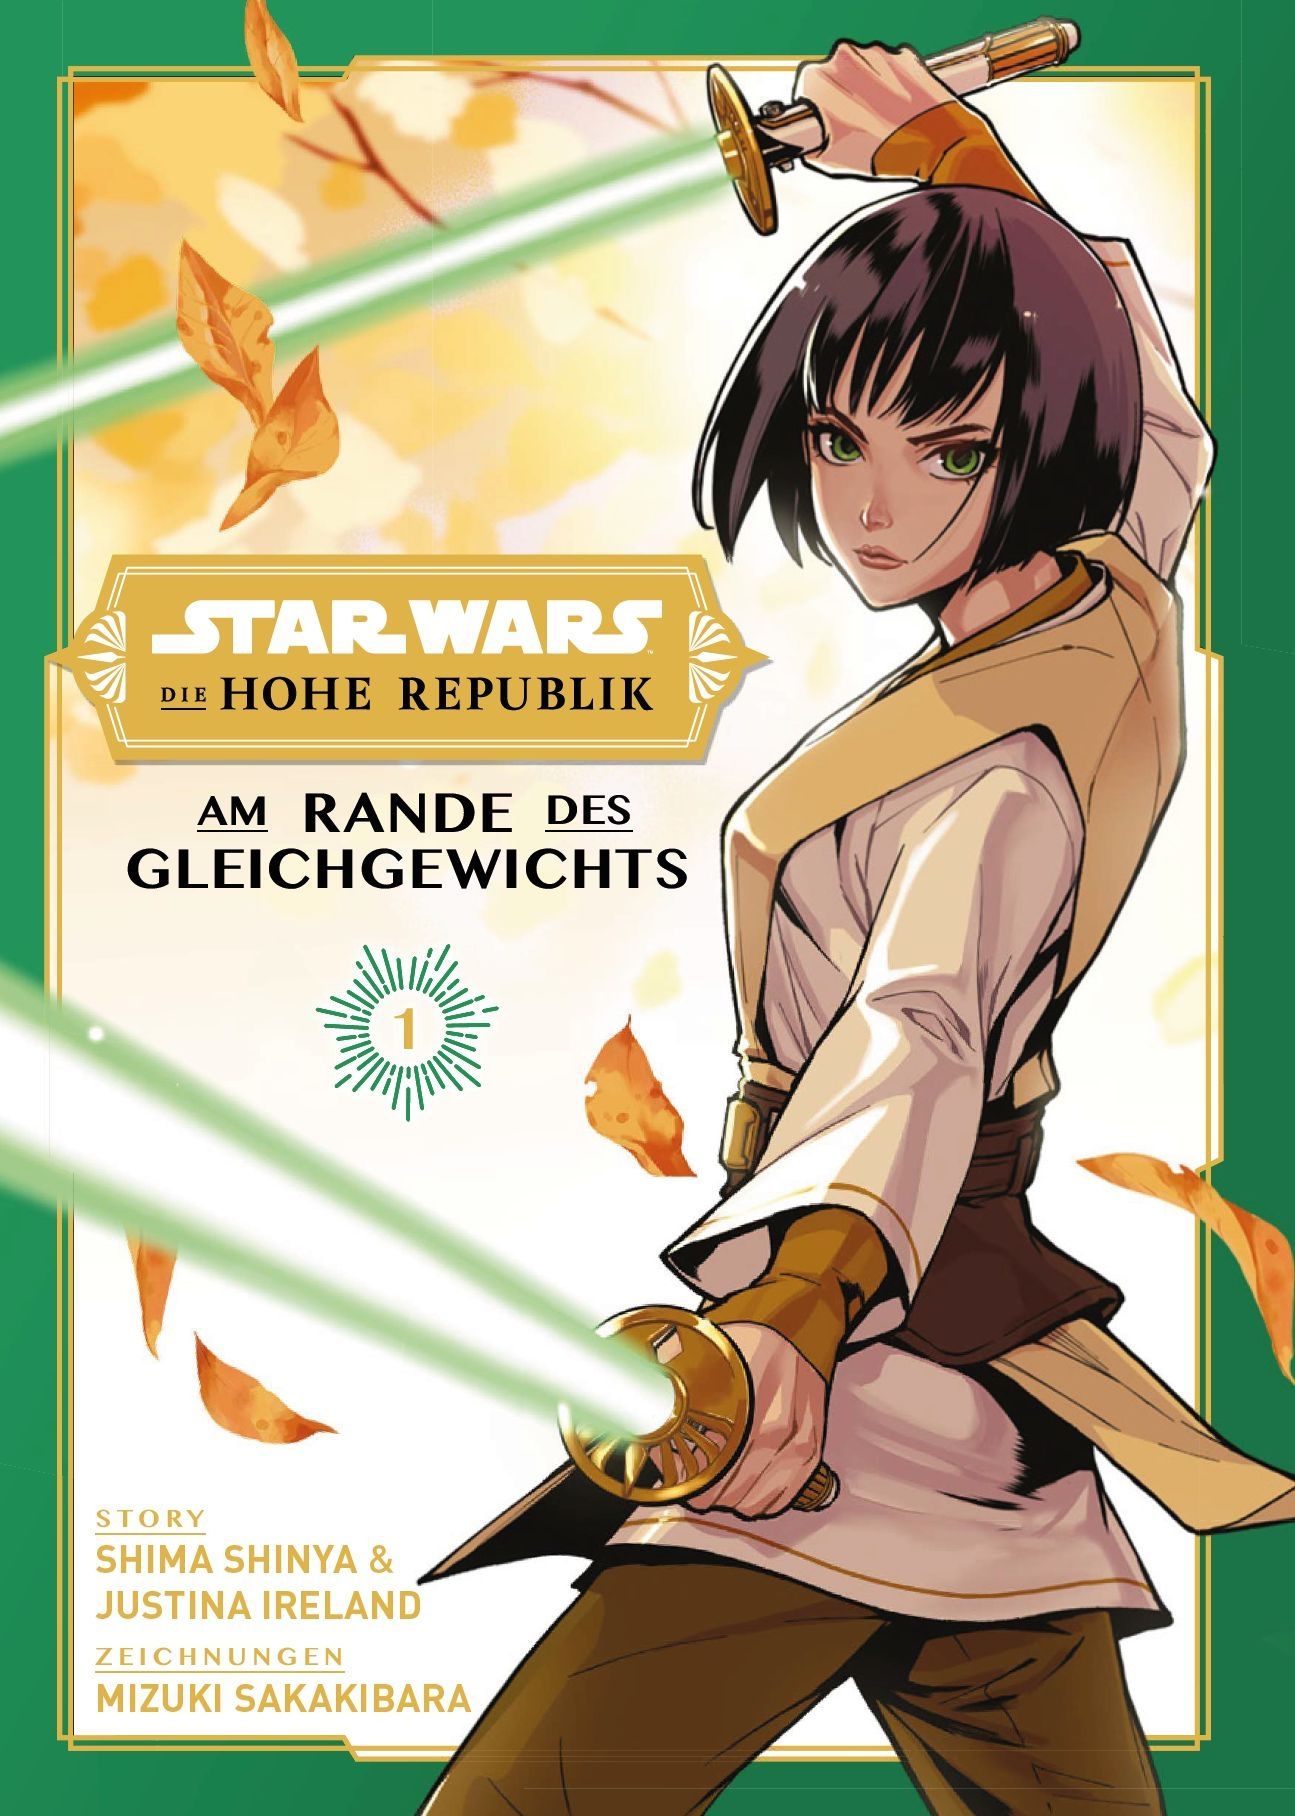 Star Wars - Die Hohe Republik - Am Rande des Gleichgewichts Manga (New)